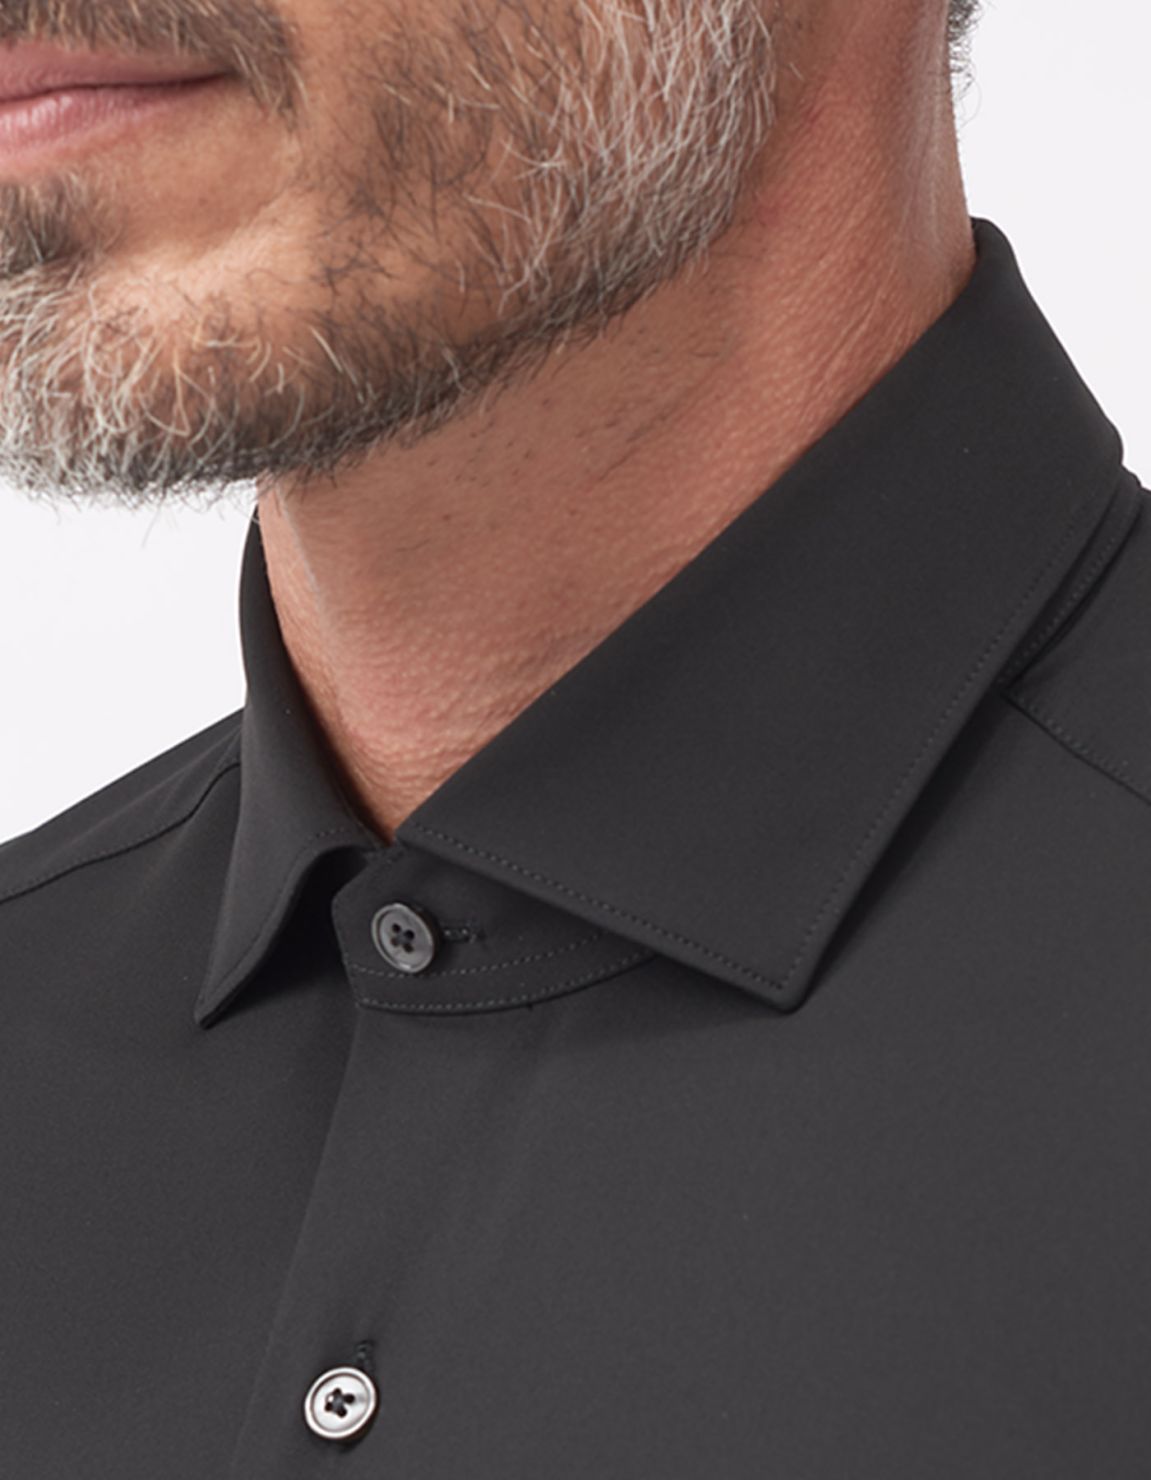 Shirt Collar small cutaway Black Twill Slim Fit 3